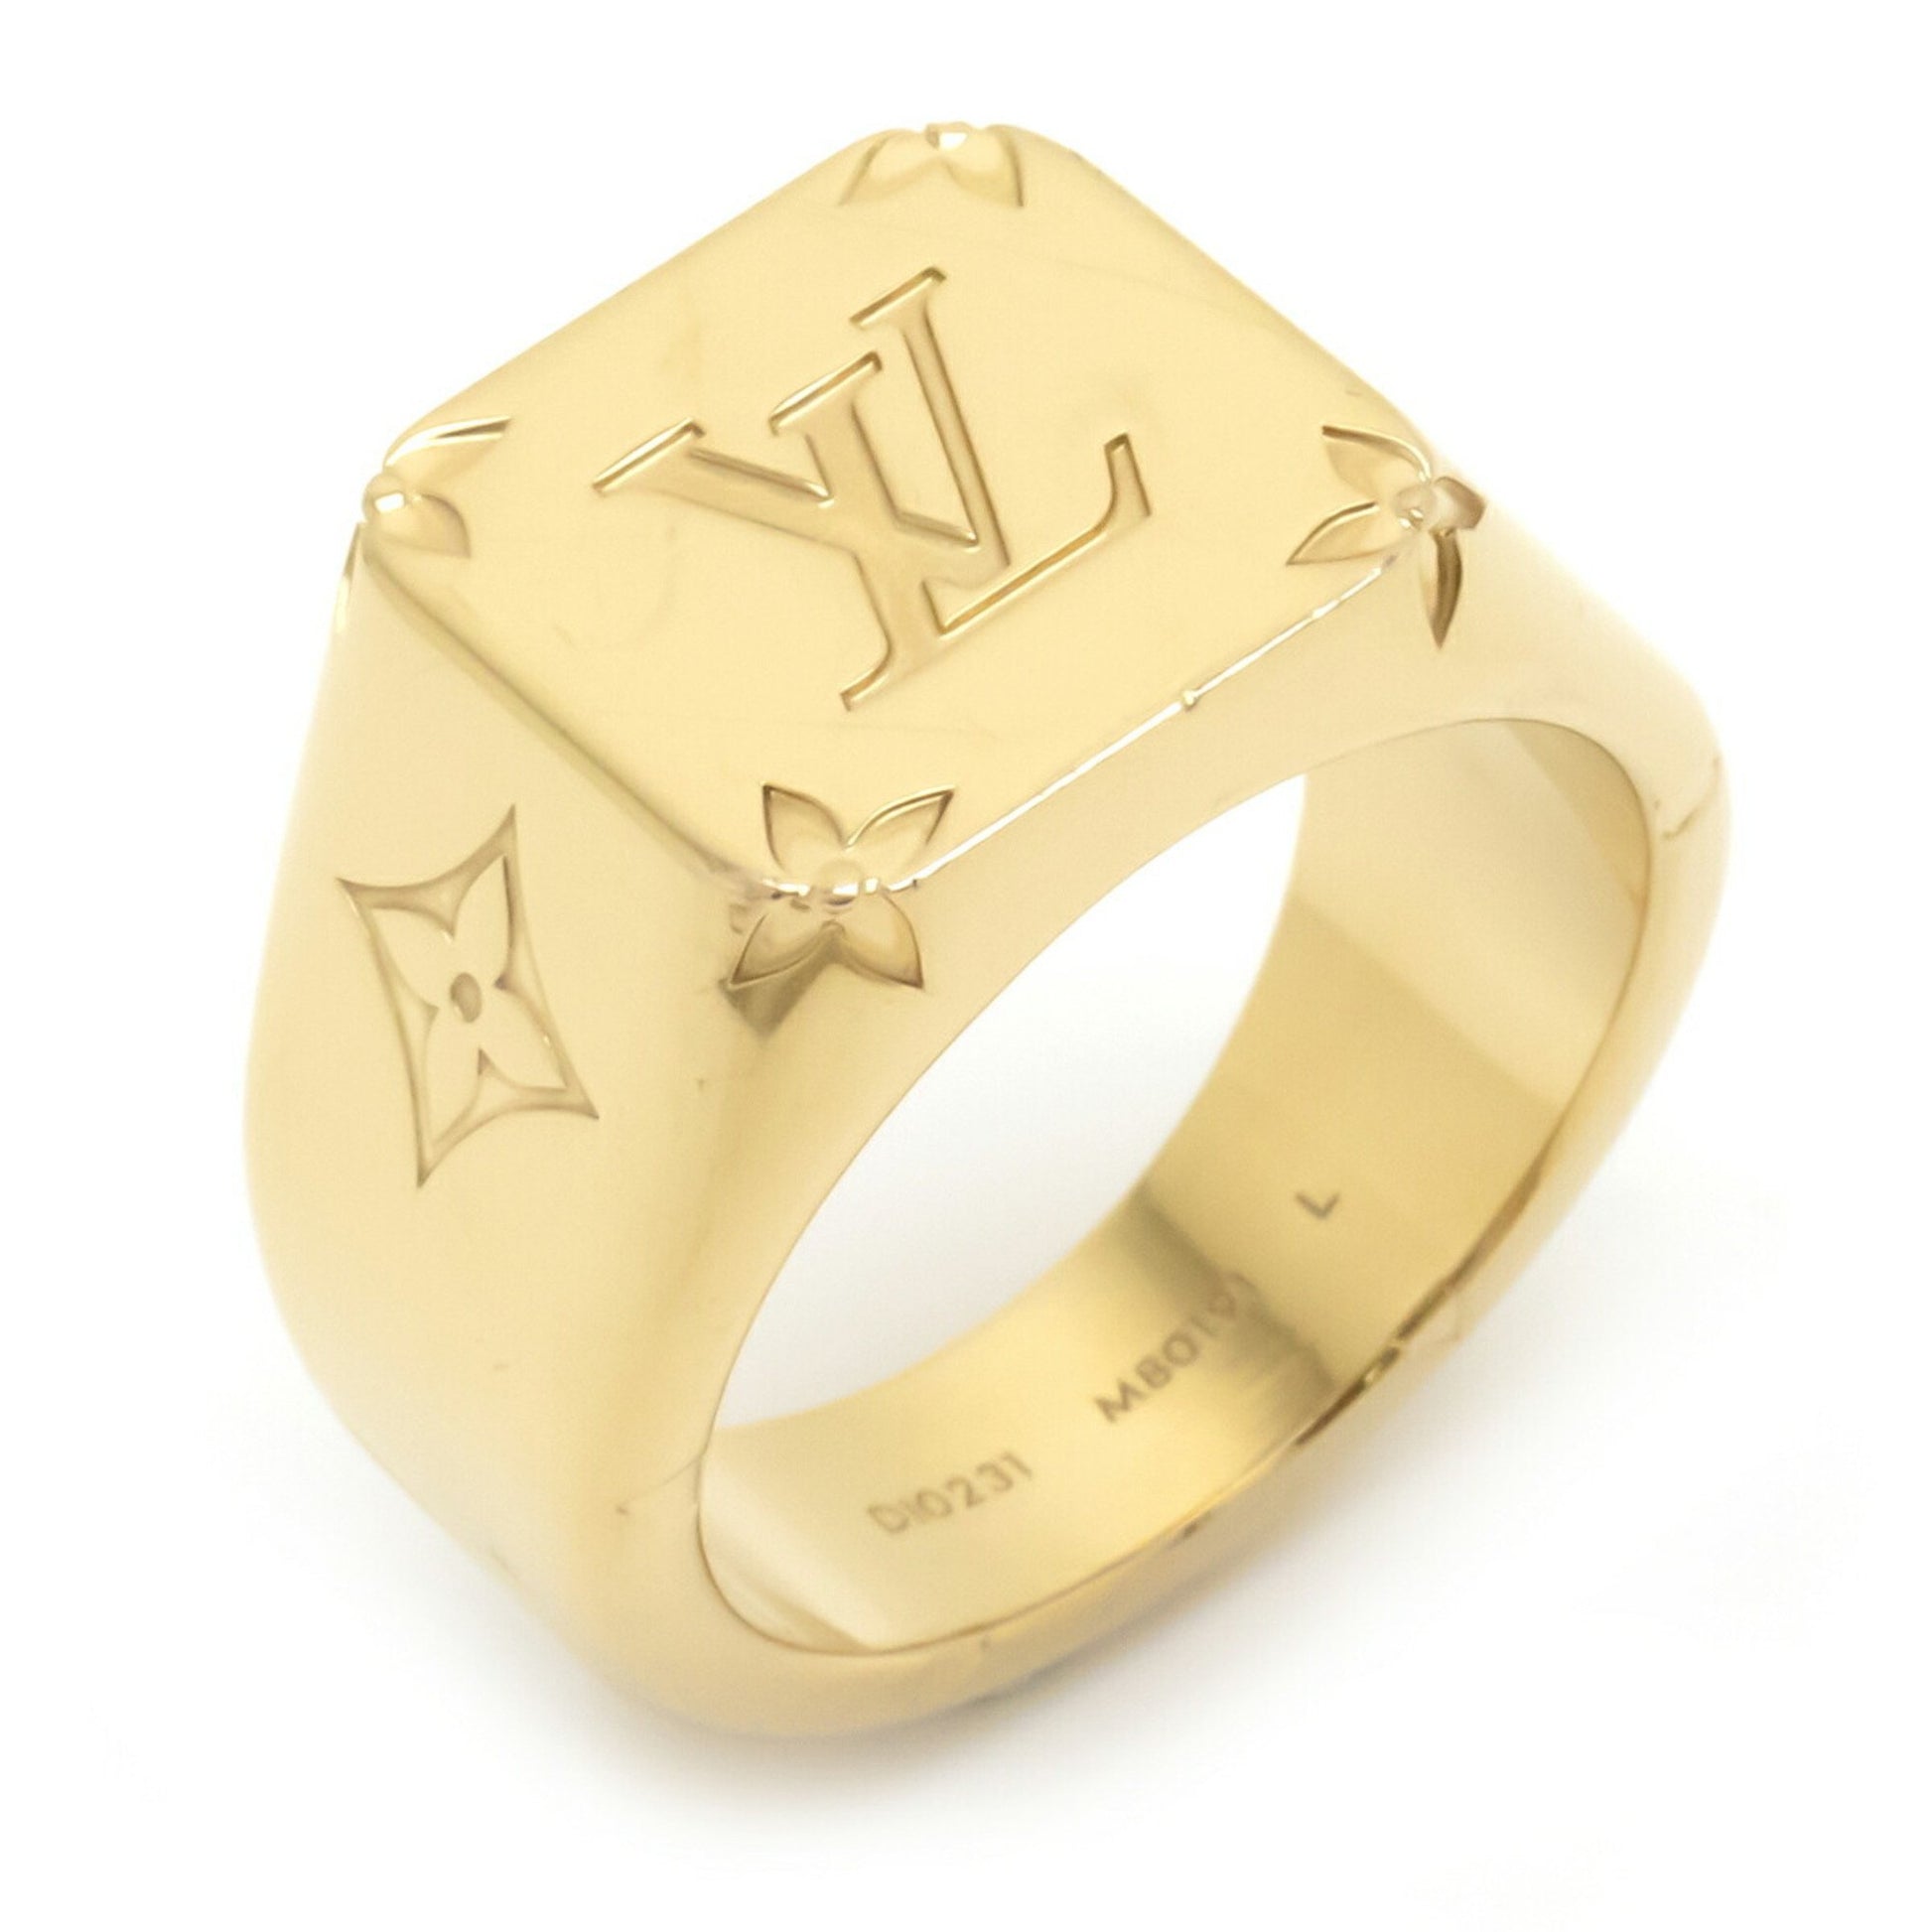 Louis Vuitton Monogram Signet Ring - 18K Yellow Gold-Plated Signet Ring,  Rings - LOU792409